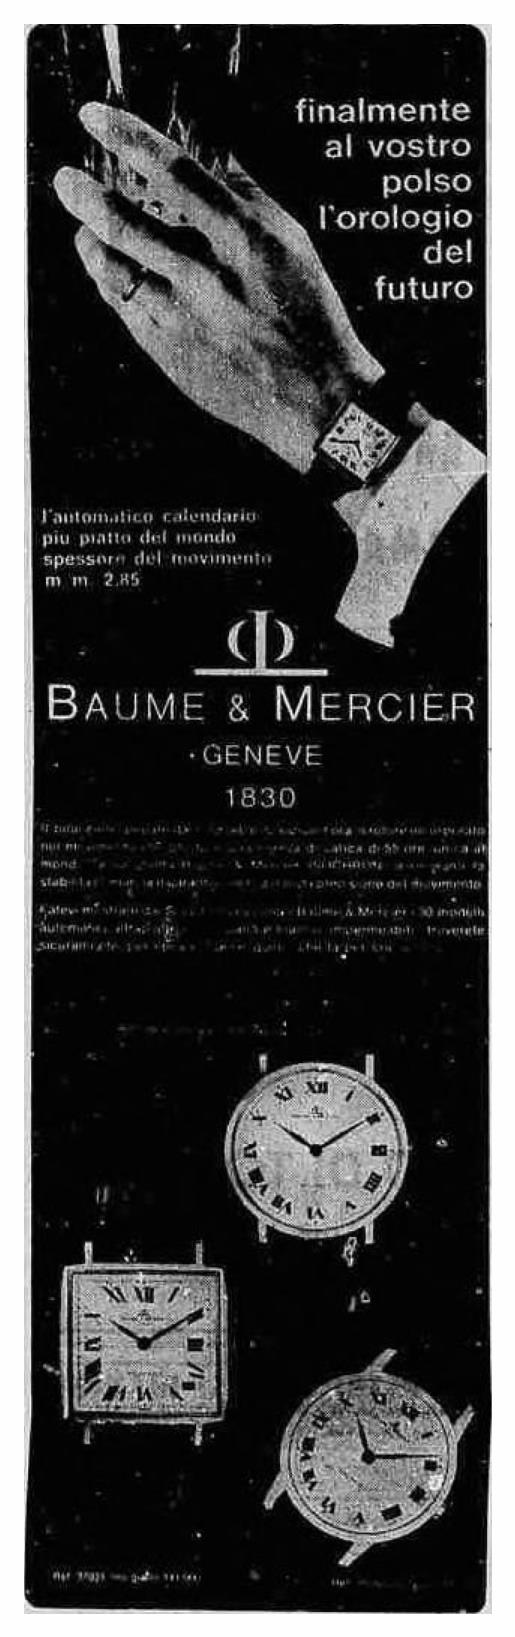 Baume & Mercier 1967 0.jpg